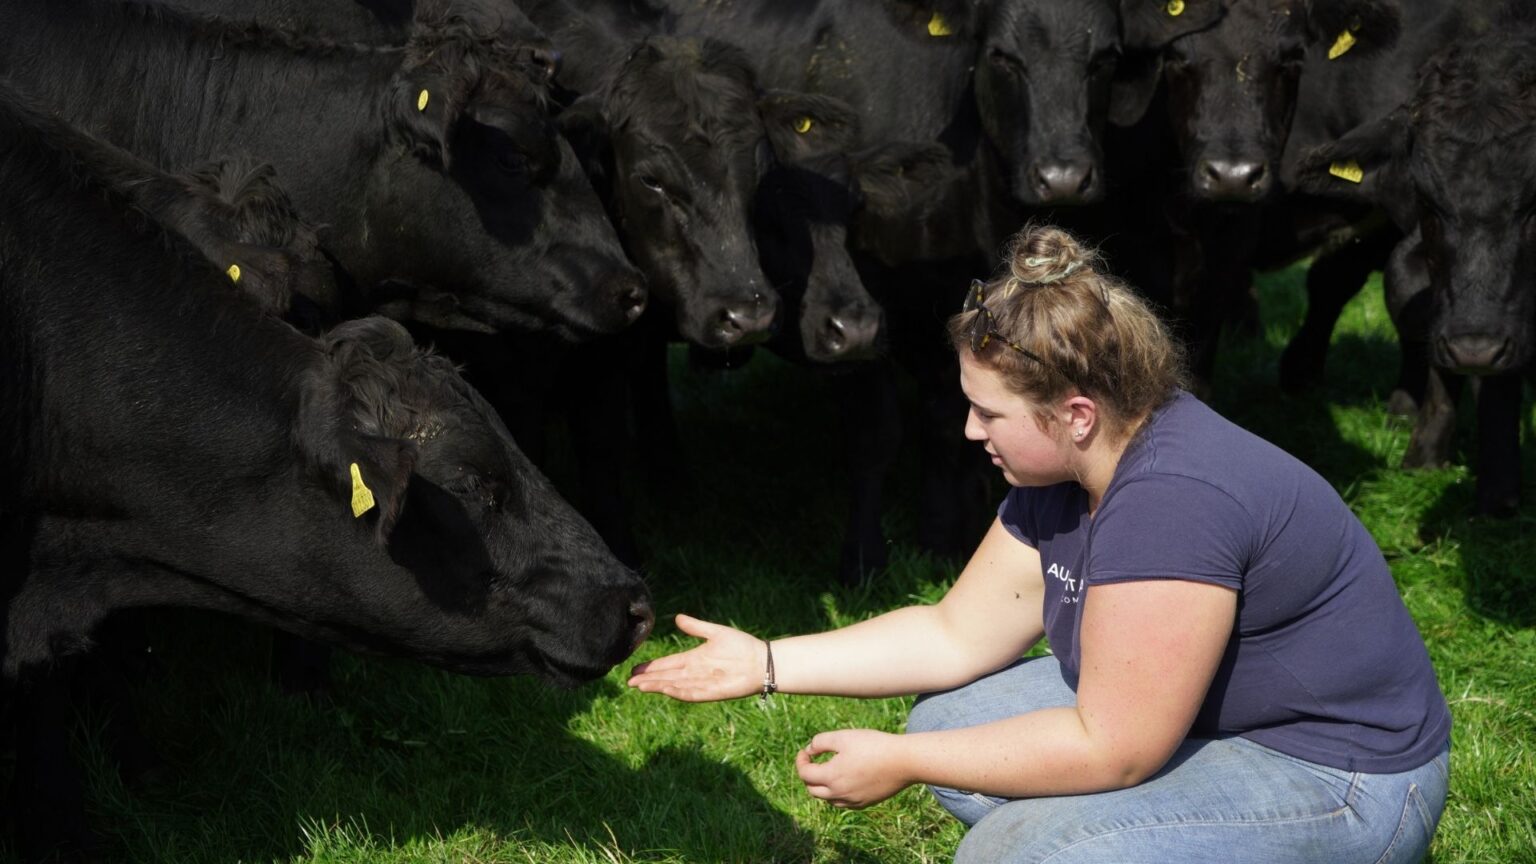 ABP UK R&D Farm Lady feeding cattle